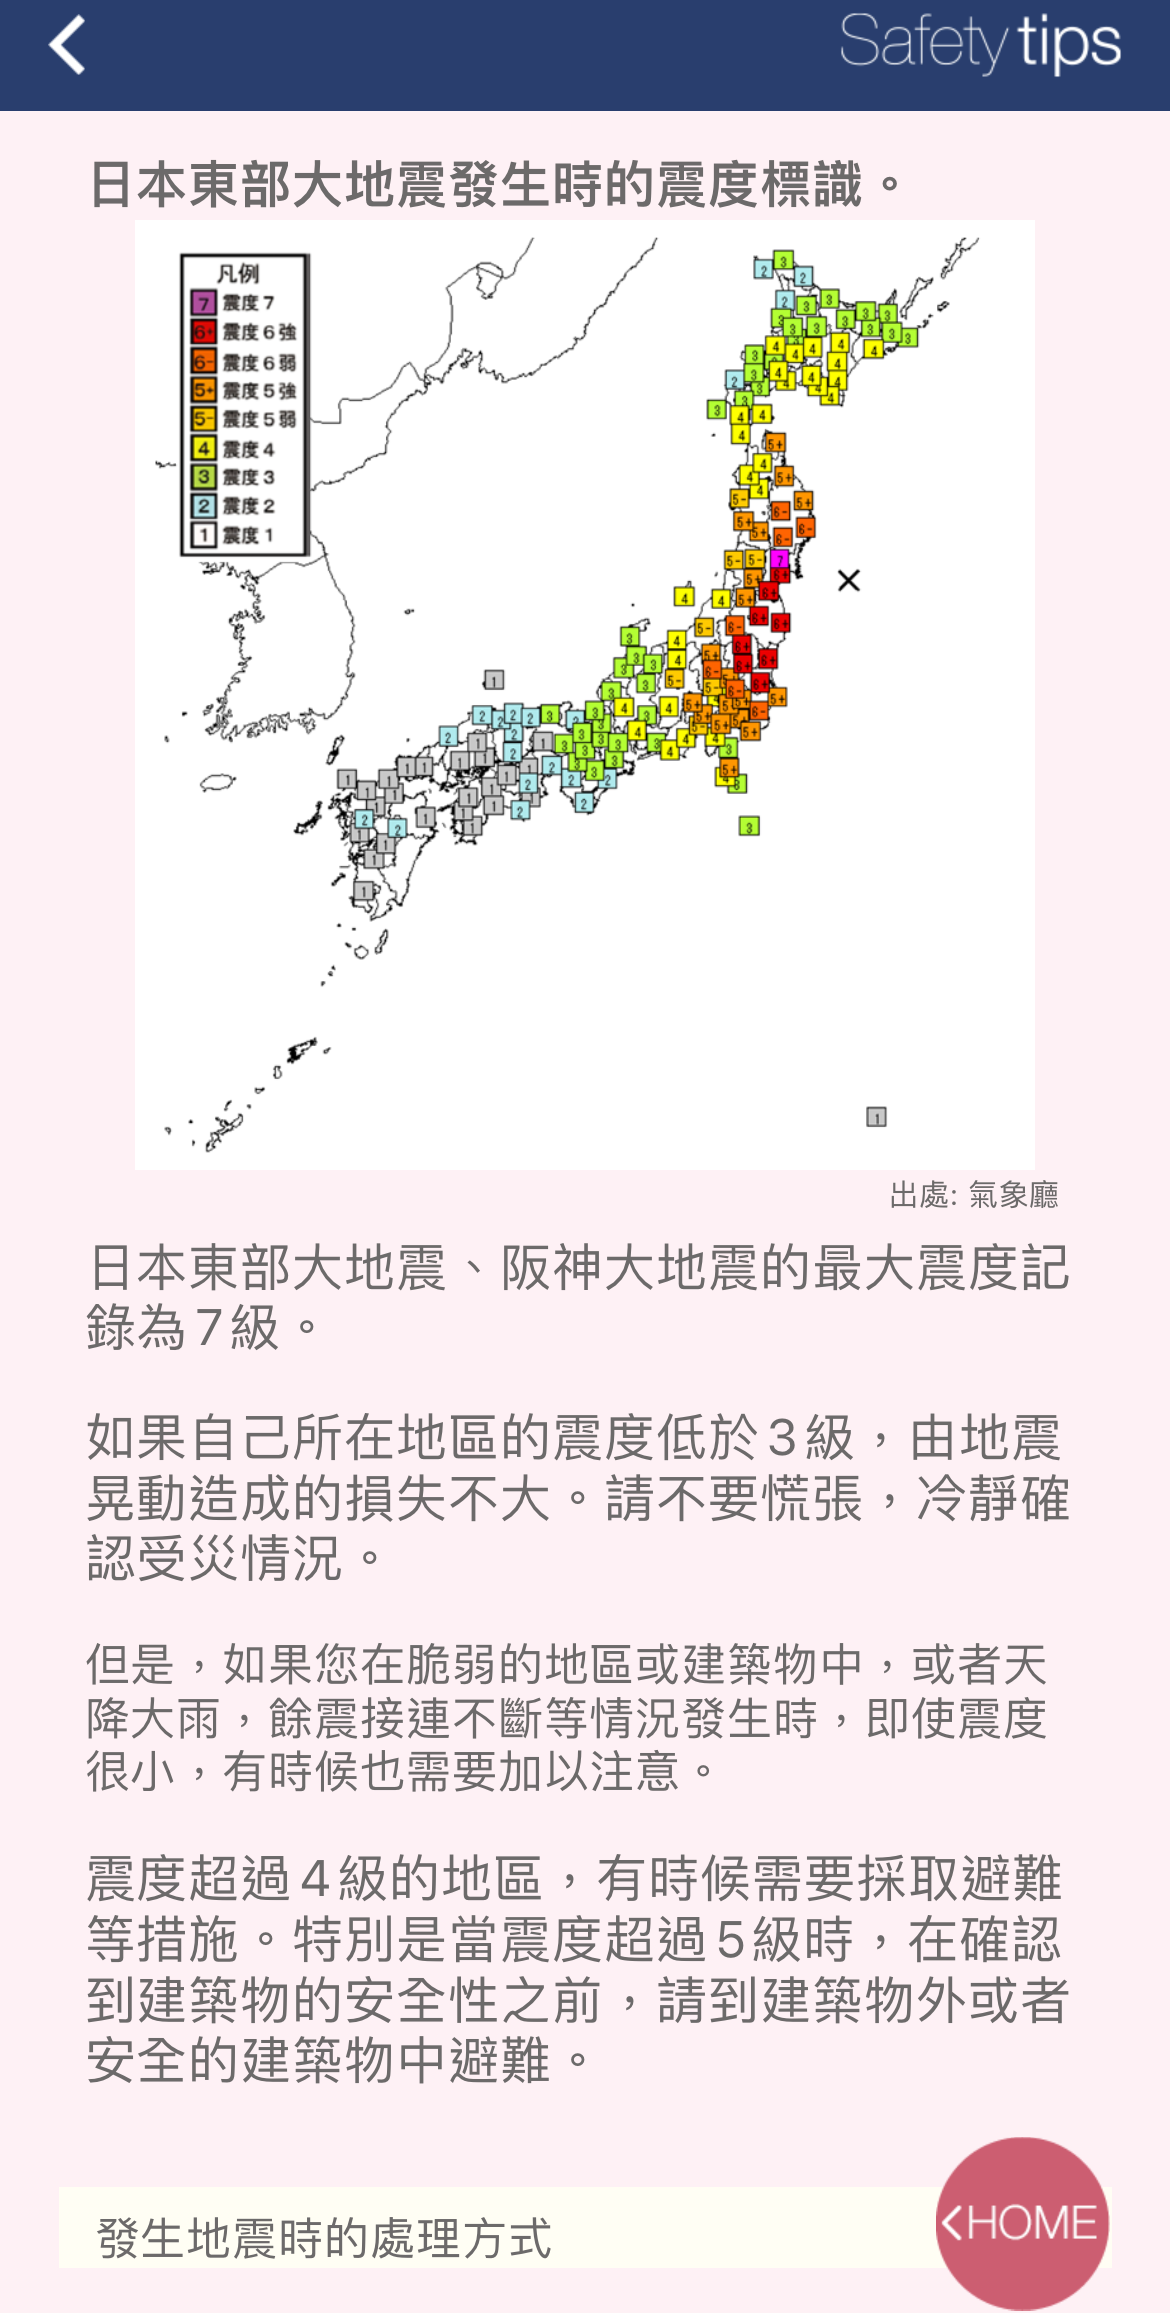 日本外國旅客專用資訊警戒APP「Safety tips」支援繁中可獲取地震速報、海嘯警報等通知 - 電腦王阿達